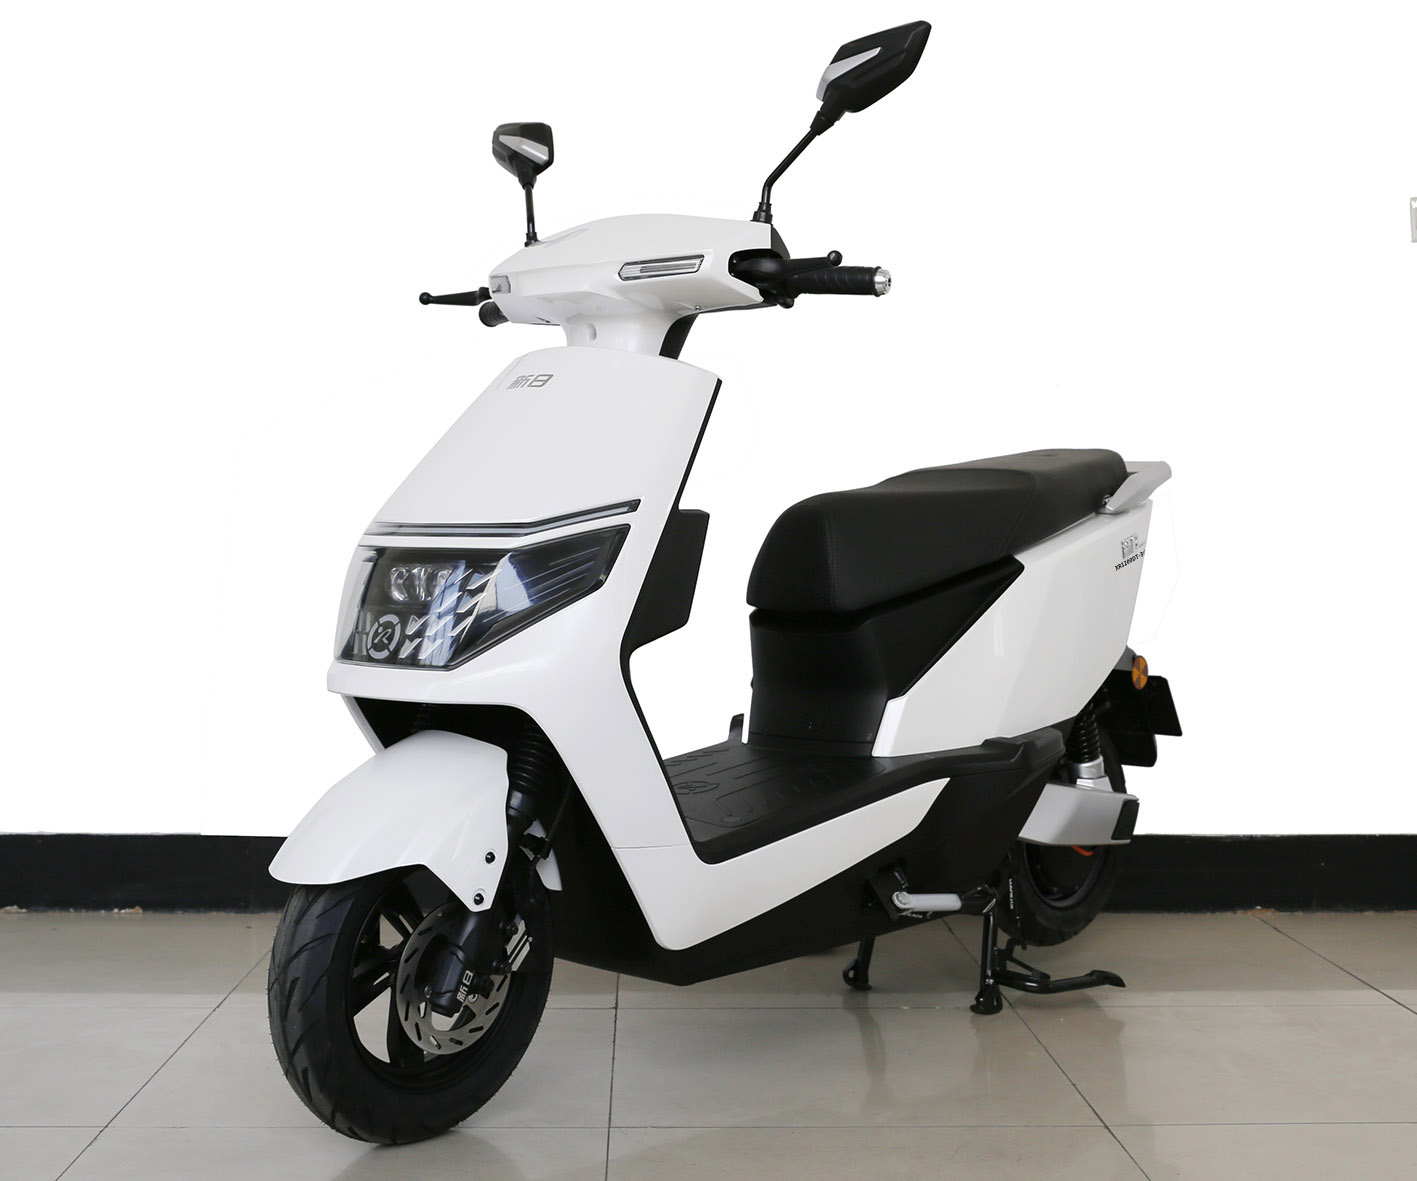 新日牌XR1200DT-3G电动两轮摩托车公告图片